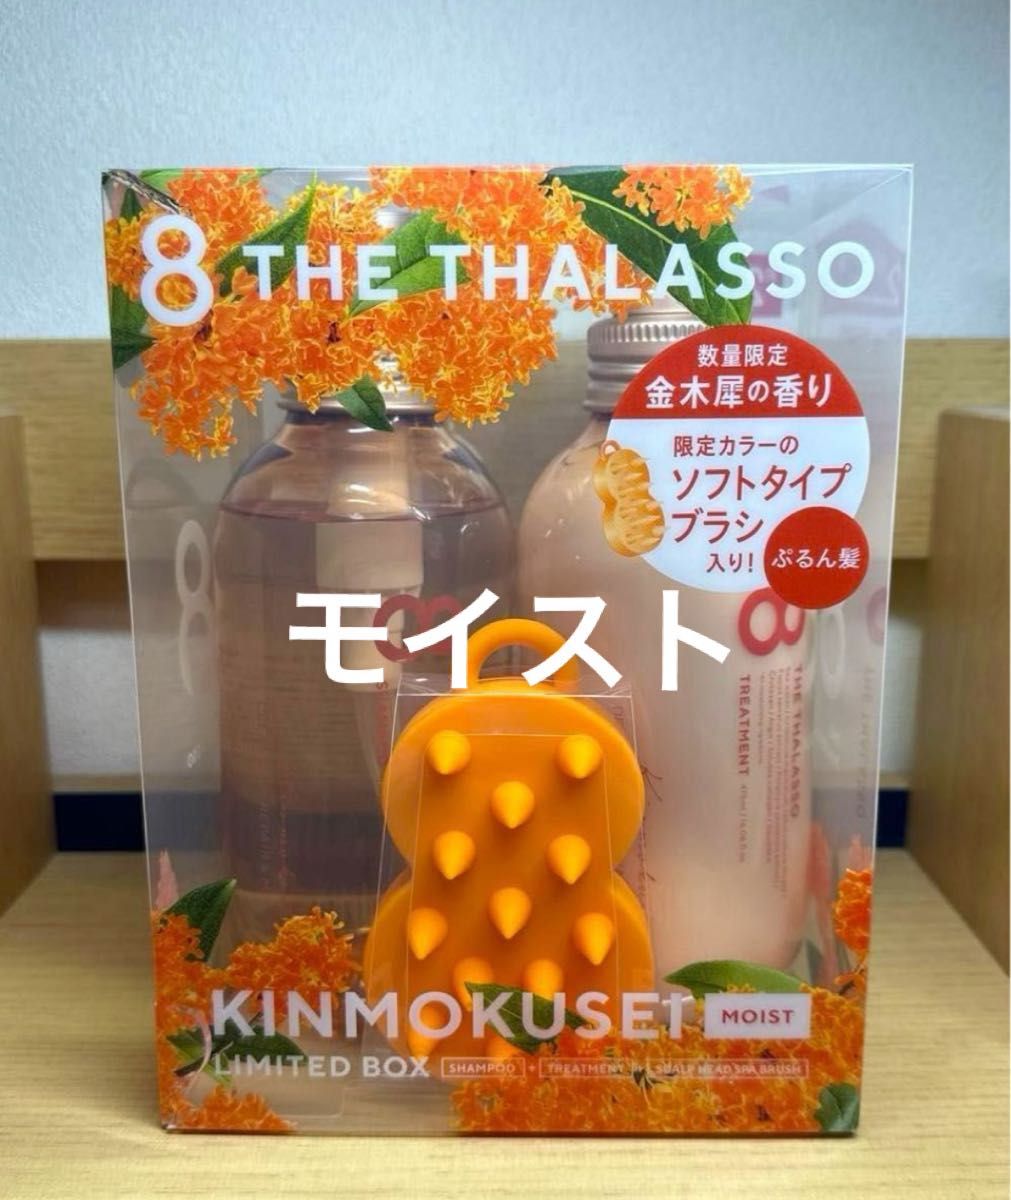 エイトザタラソ 8 THE THALASSO モイスト キンモクセイ 金木犀の香り やみつきブラシ付き 限定キット 